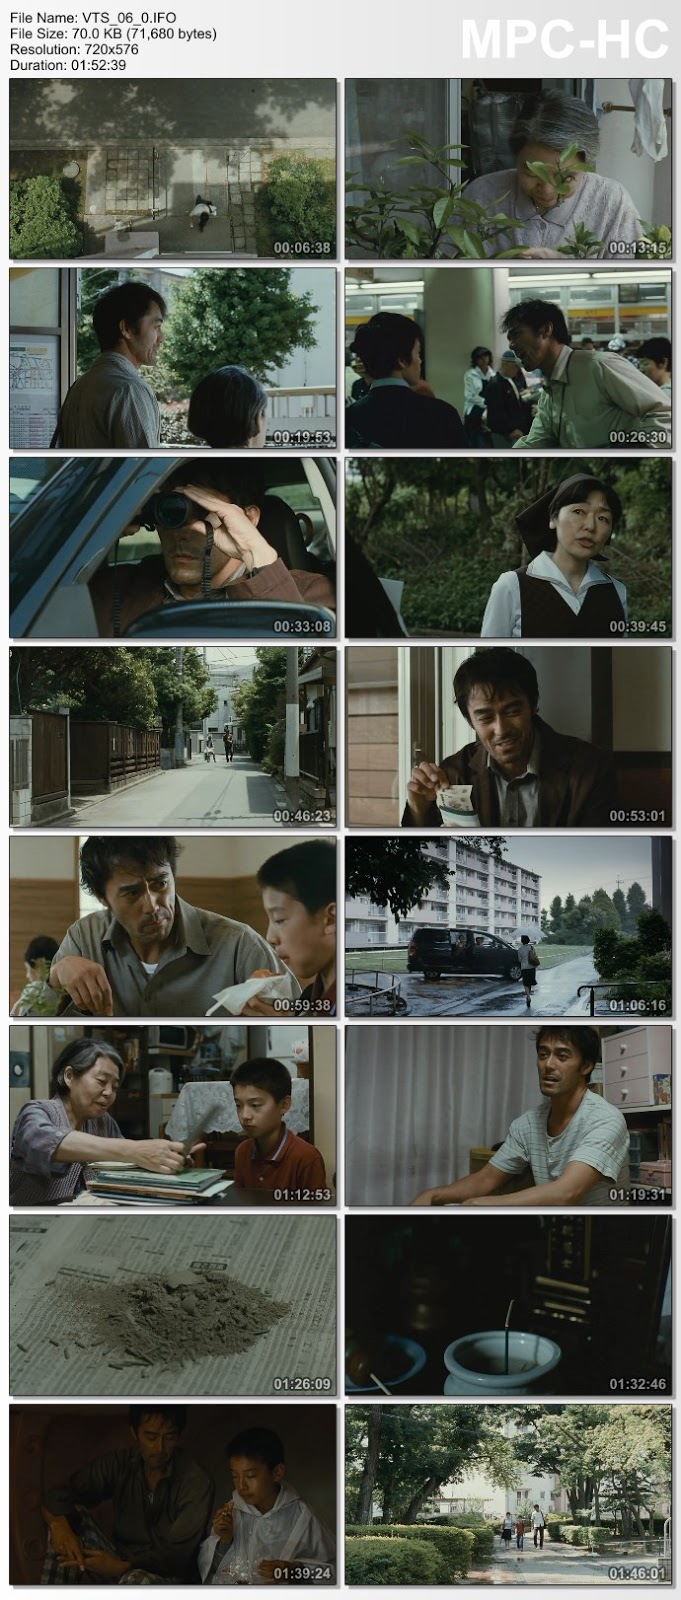 {ใหม่! DVD Master}[ญี่ปุ่น] After the Storm (2016) - รักได้มั้ย พ่อคนนี้ [DVD5 Master][เสียง:ไทย 5.1/Jap 5.1][ซับ:ไทย/Eng][.ISO][4.19GB] AS_MovieHdClub_SS